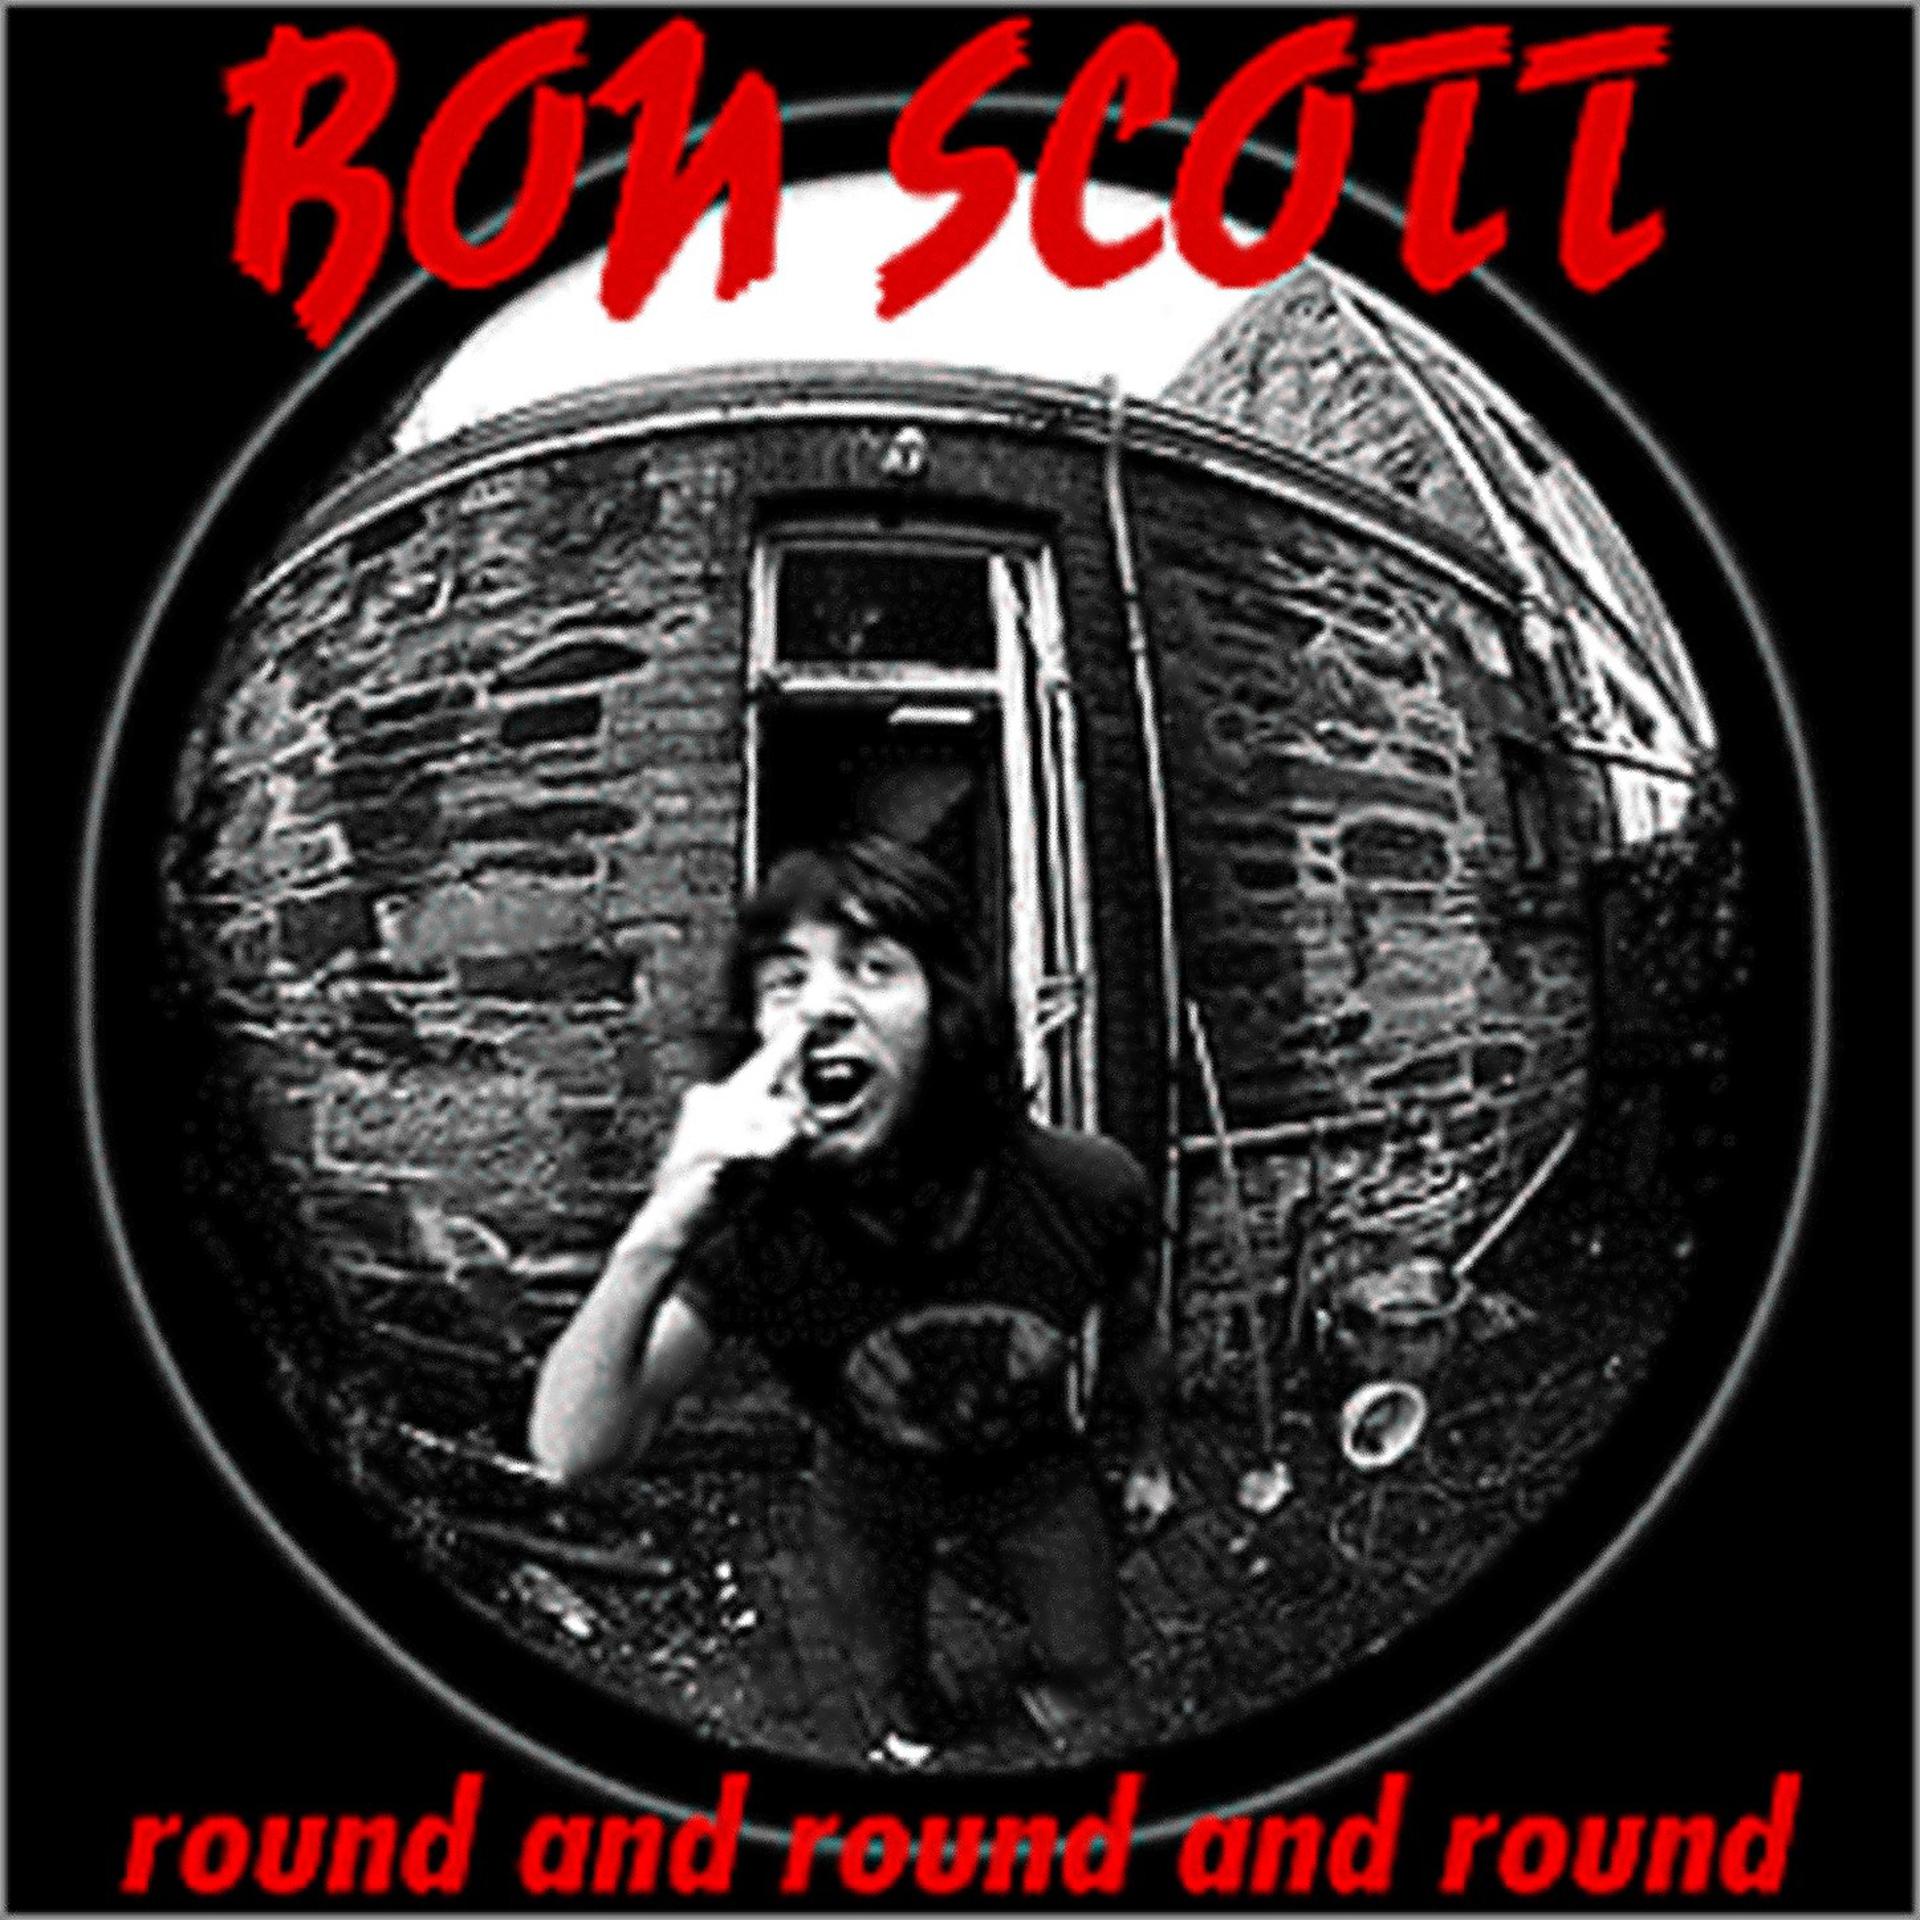 Песня round and round. Round and Round and Round bon Scott. Bon Scott - Round and Round. Round and Round and Round bon Scott альбом. Bonbon Round.